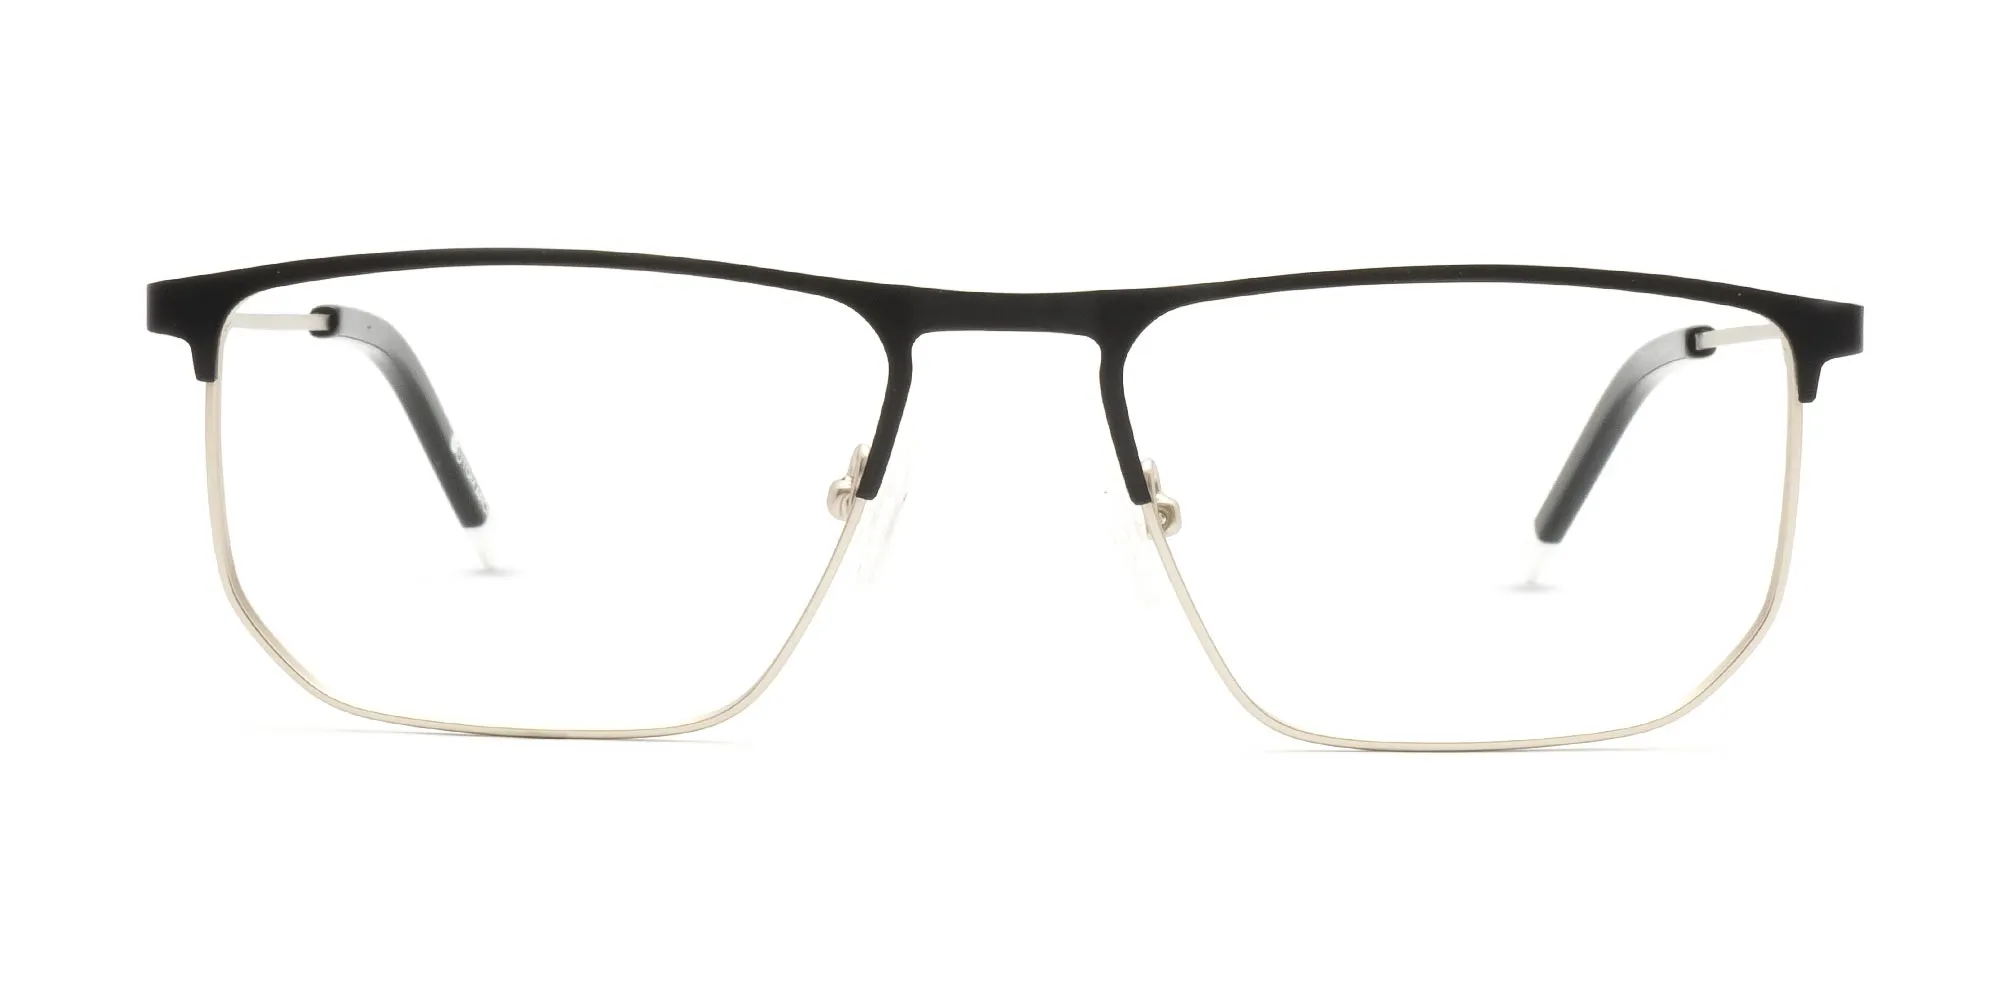 thin metal rim glasses-2